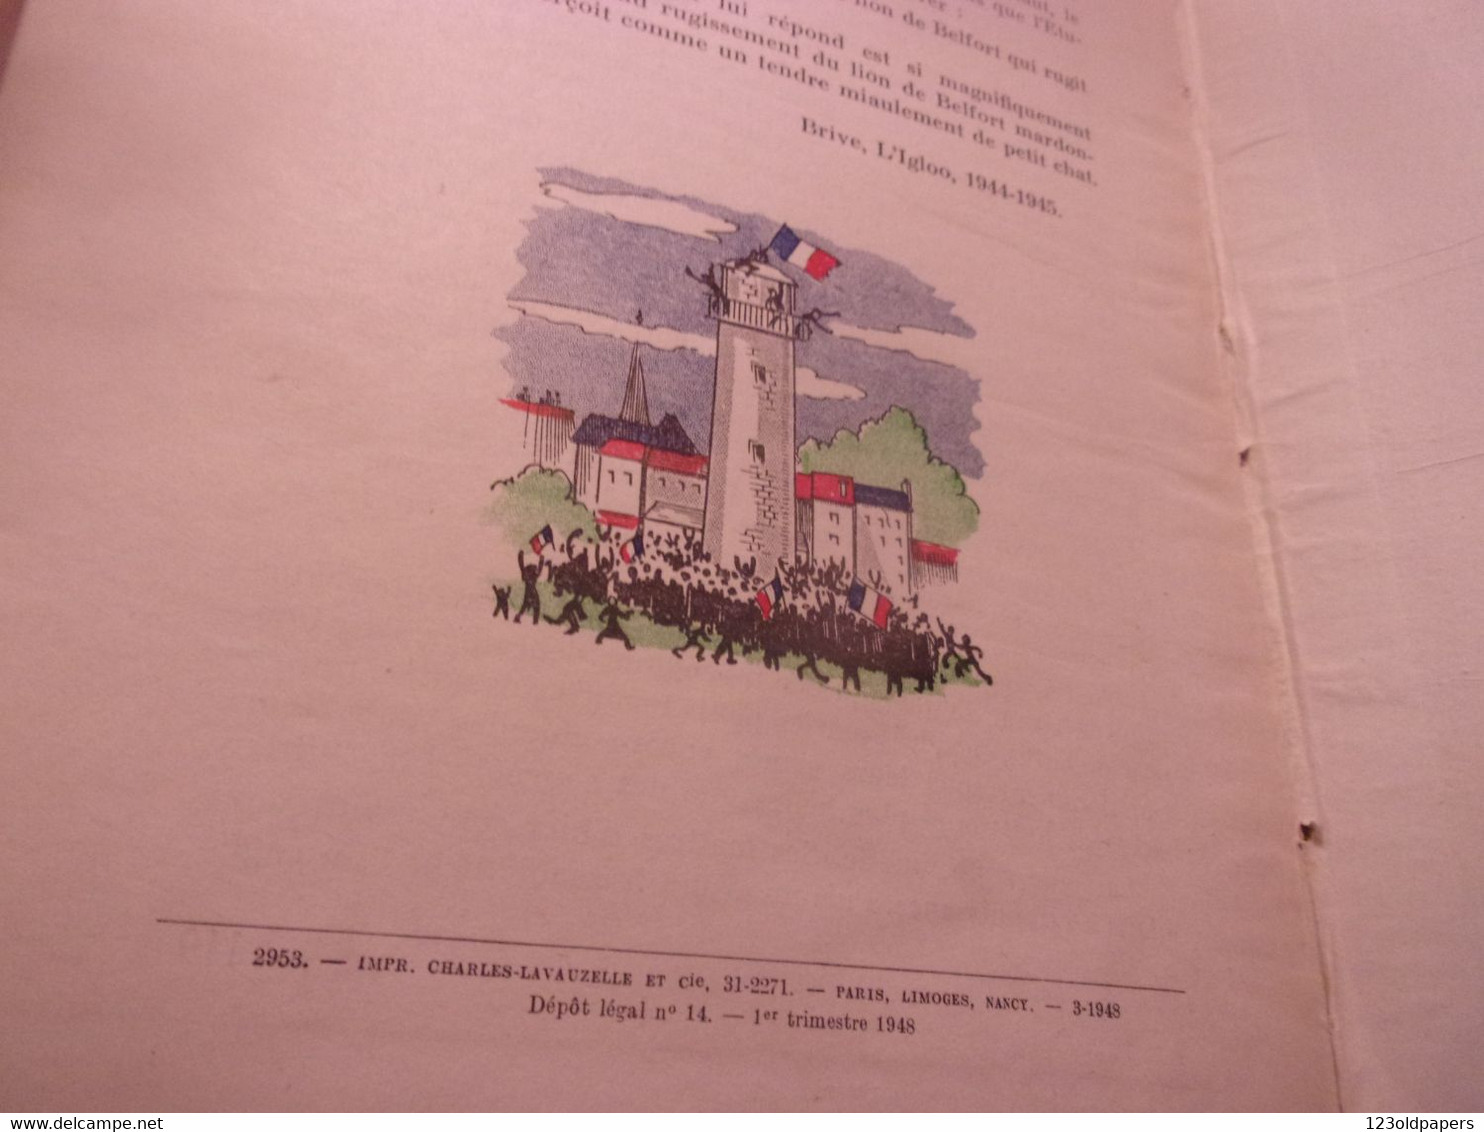 ♥️  Le maquis de la Mardondon de Léonce Bourliaguet, 1948 illustrations de G. Jacquement WWII RESISTANCE